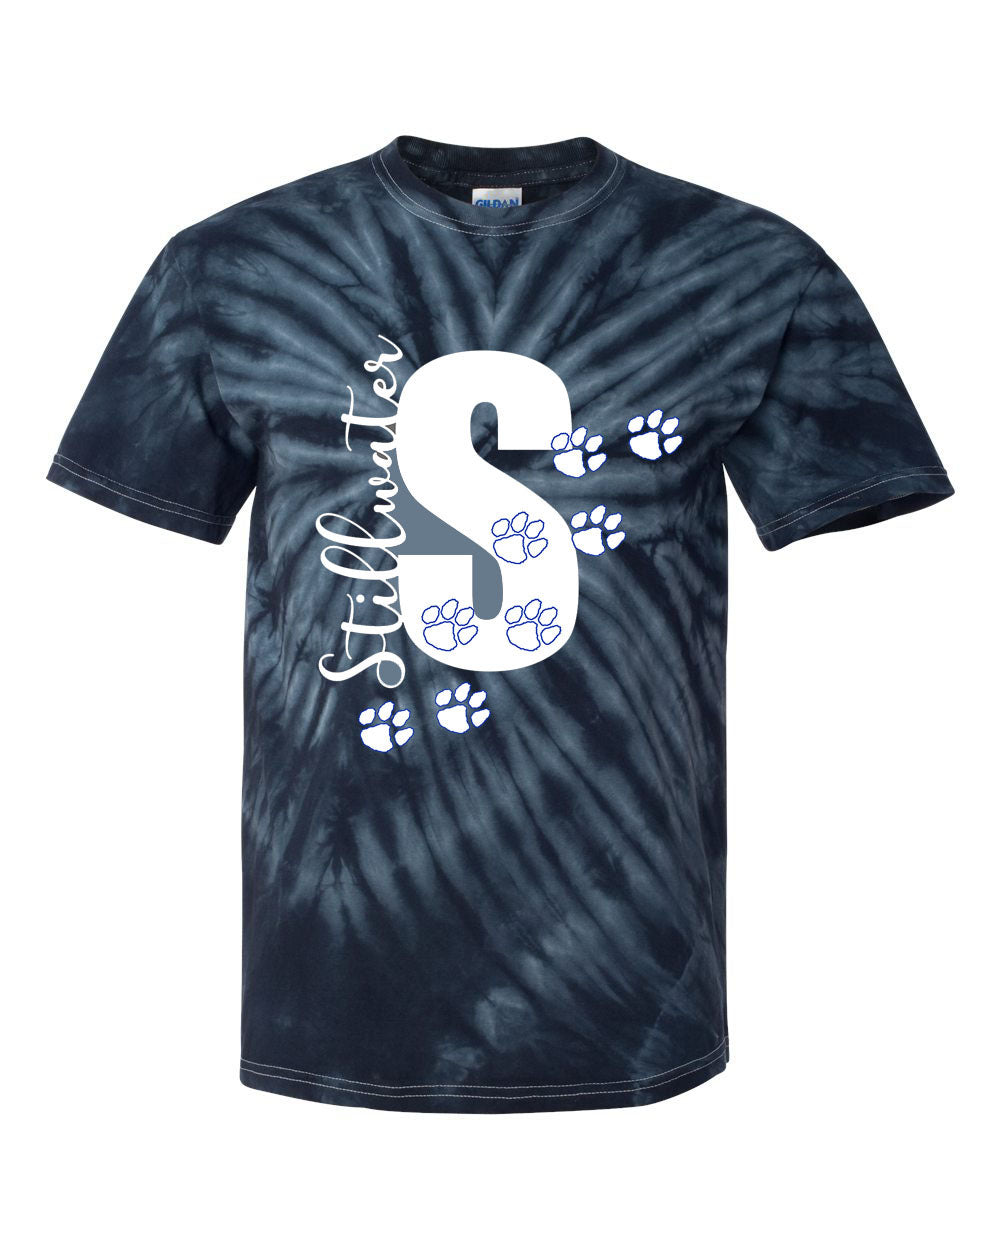 Stillwater Design 6 Tie Dye t-shirt